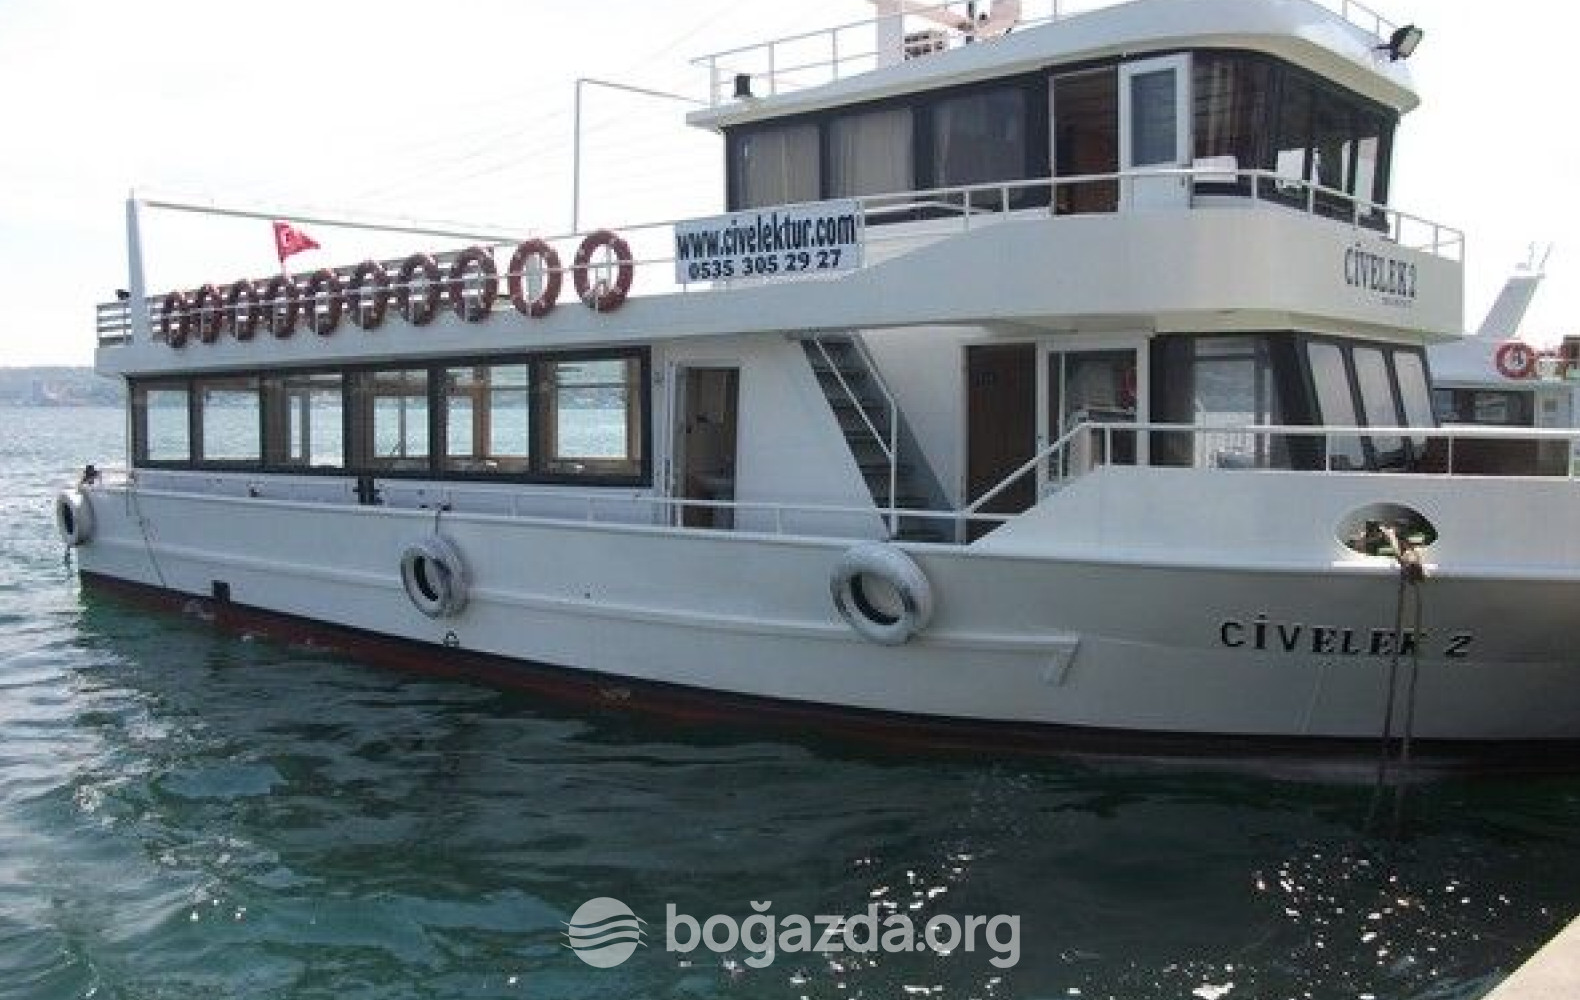 Civelek 2 Tur Gezi Teknesi